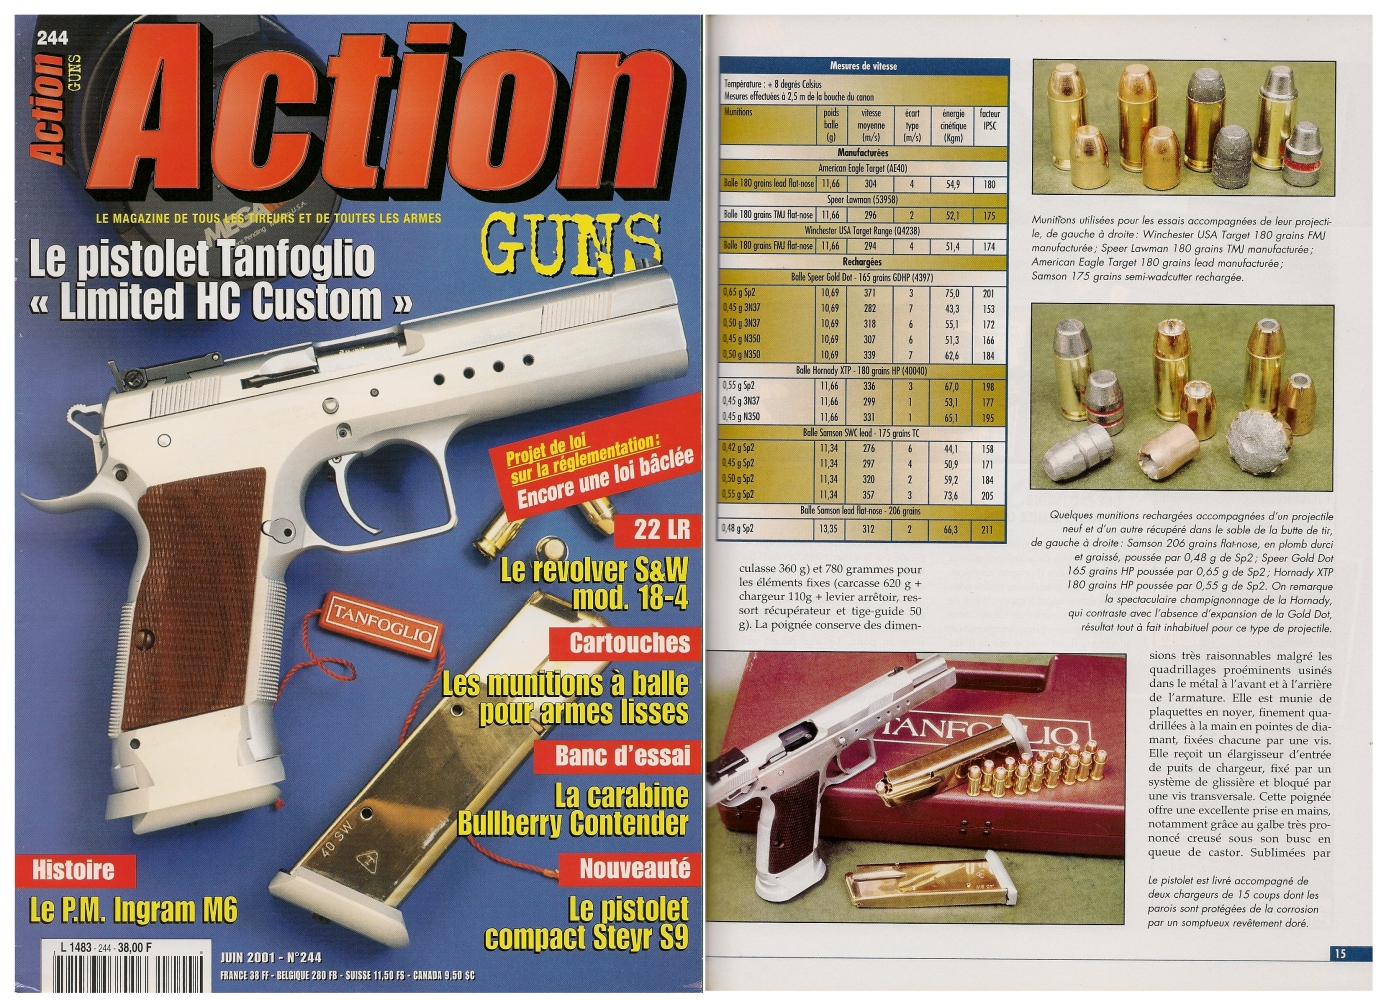 Le banc d’essai du pistolet Tanfoglio « Limited HC Custom » a été publié sur 7 pages dans le magazine Action Guns n°244 (juin 2001).